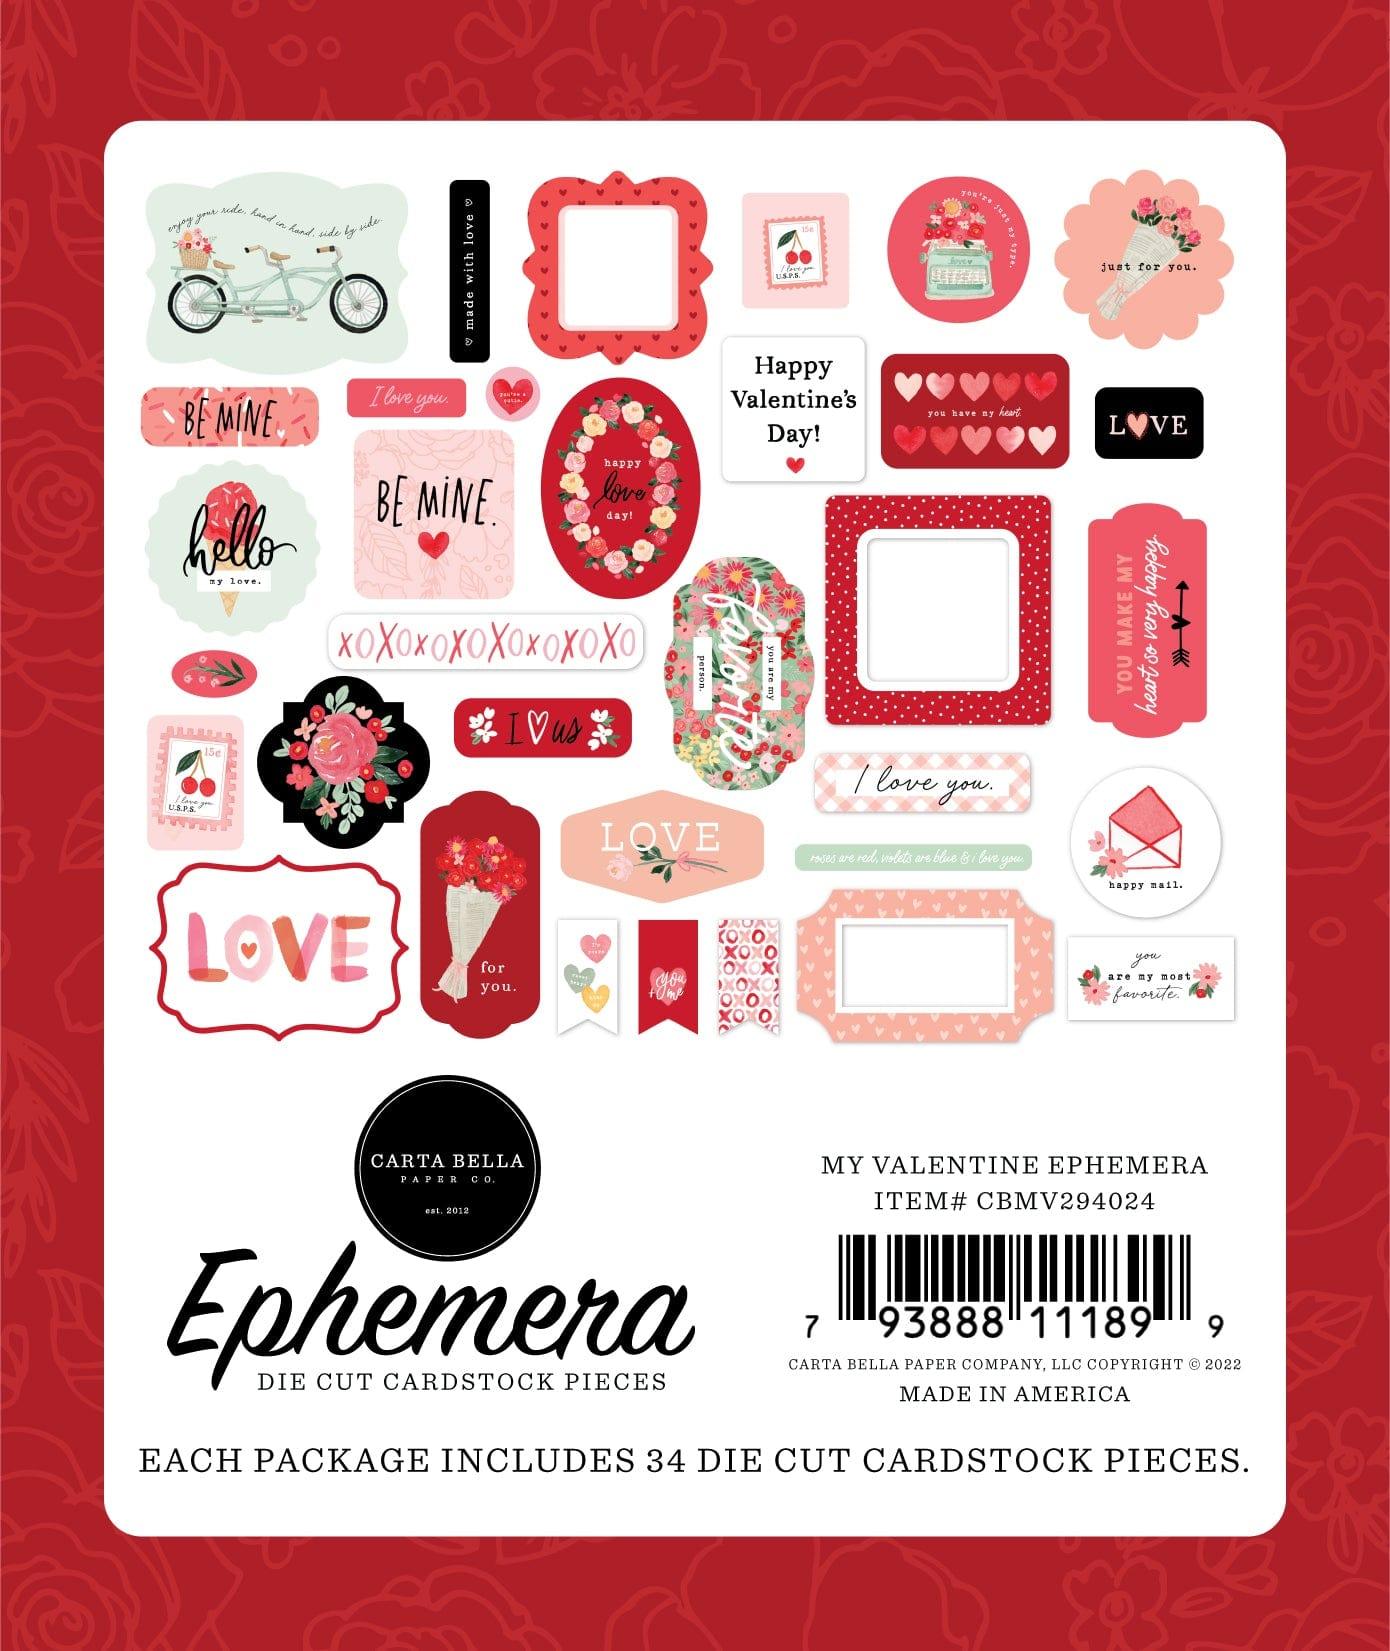 My Valentine Collection 5 x 5 Scrapbook Ephemera Die Cuts by Carta Bella - Scrapbook Supply Companies